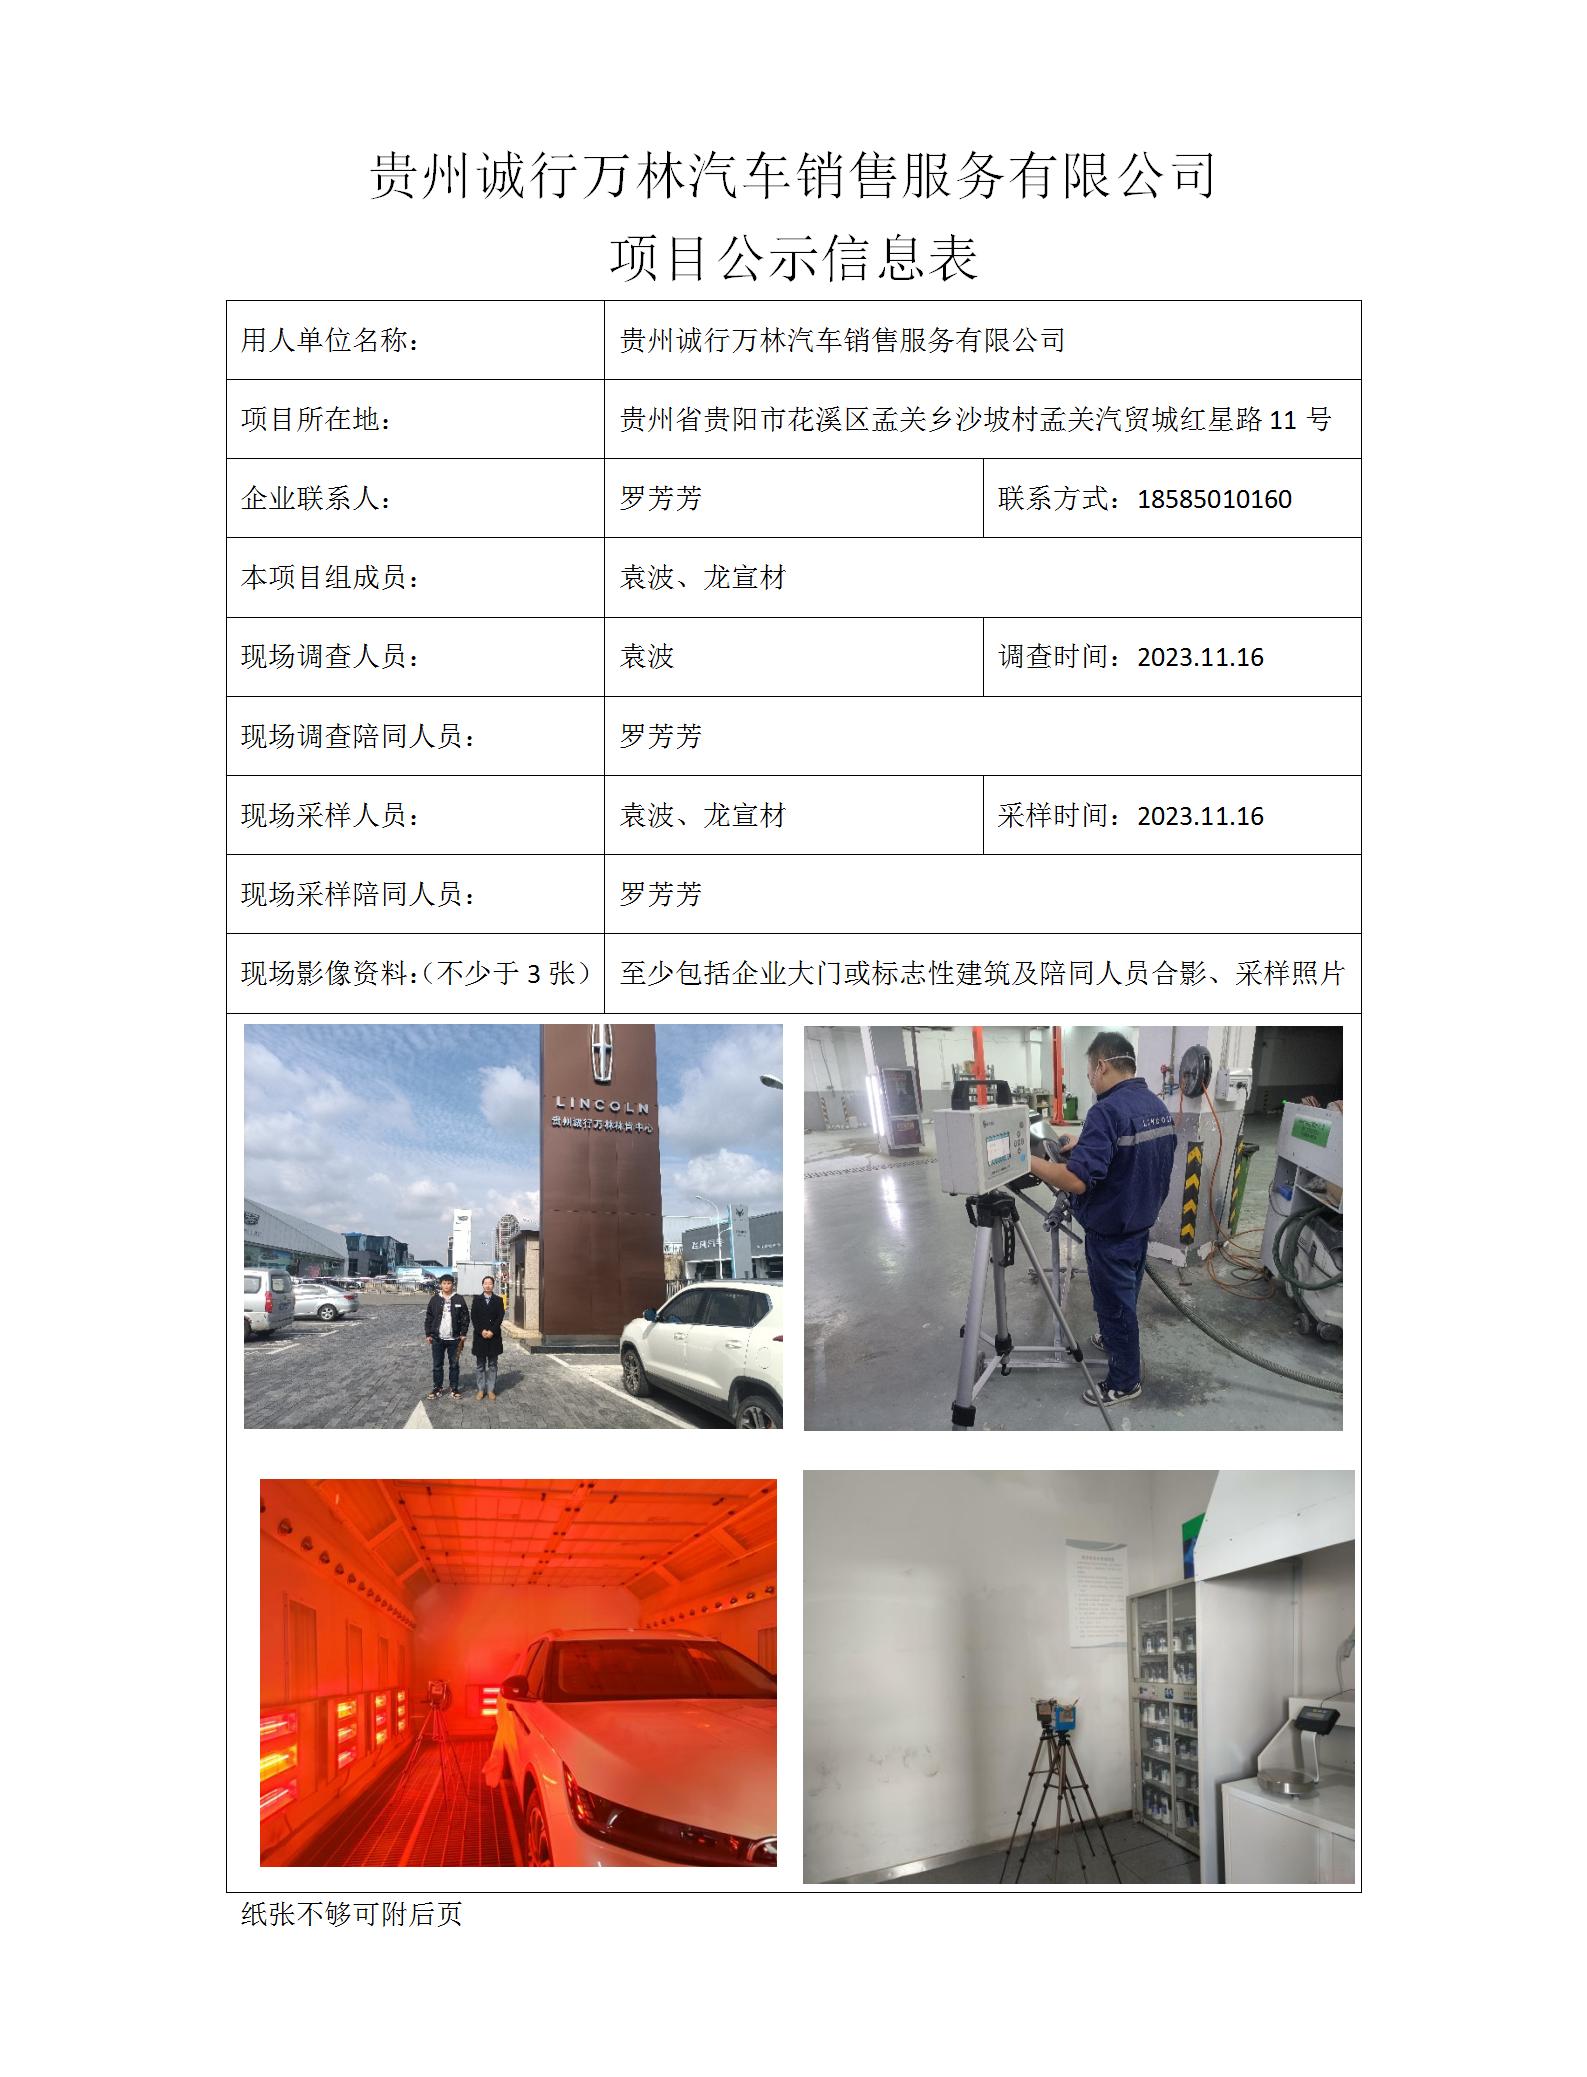 MD2023-0315（XP-F）贵州诚行万林汽车销售服务有限公司项目公示信息表_01.jpg